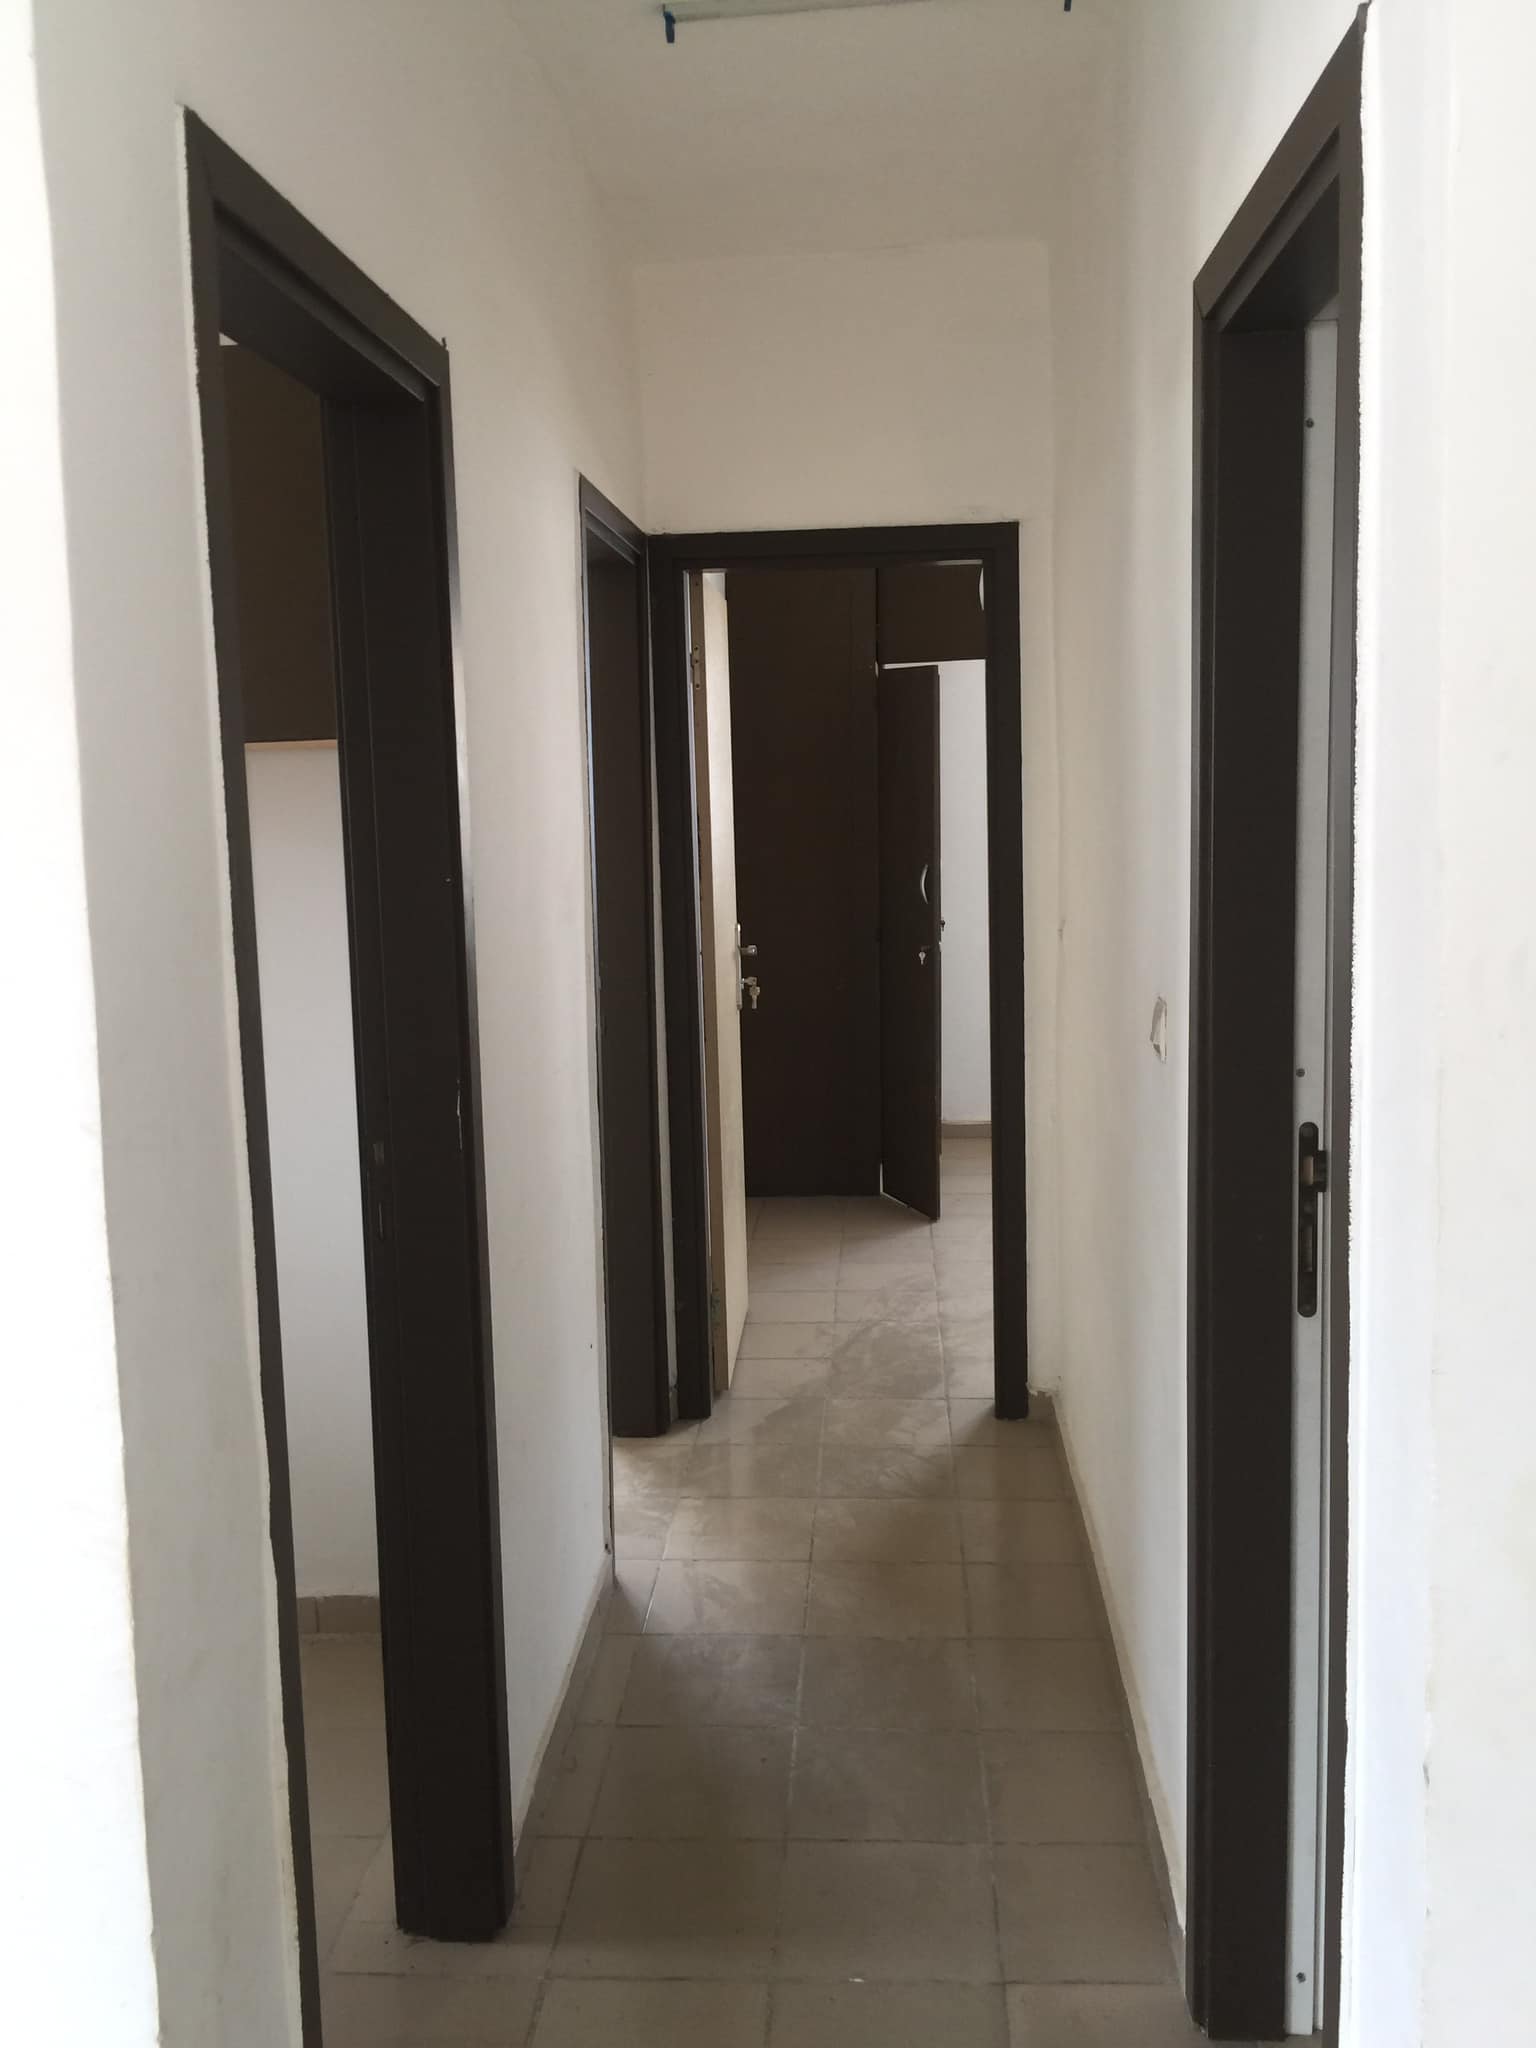 Maison à louer à Abobo  a Ndotré vers le stade olympique deux chambres  salon deux douche